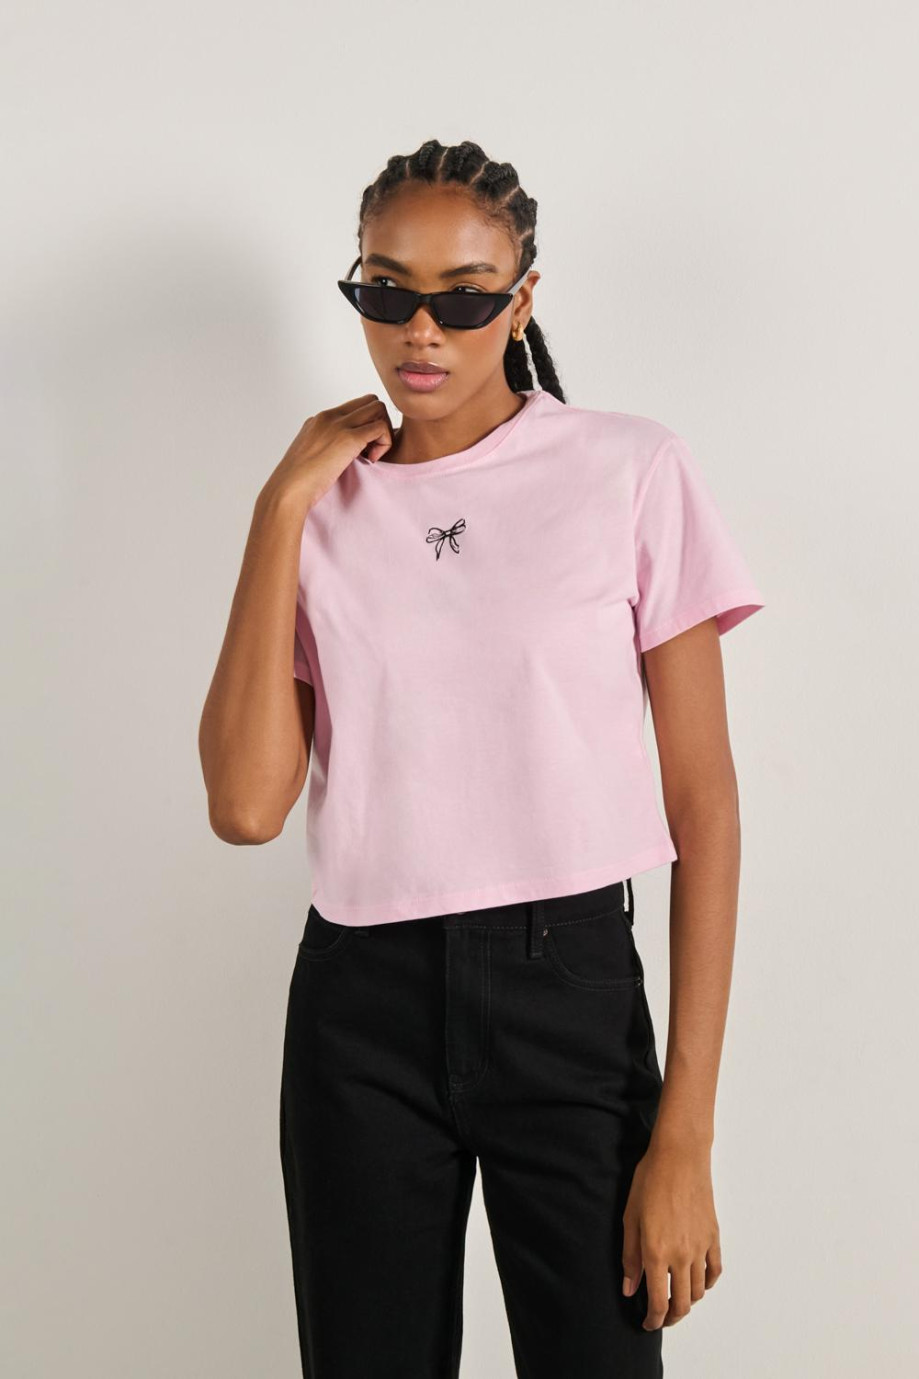 Camiseta rosada clara crop top con diseño minimalista